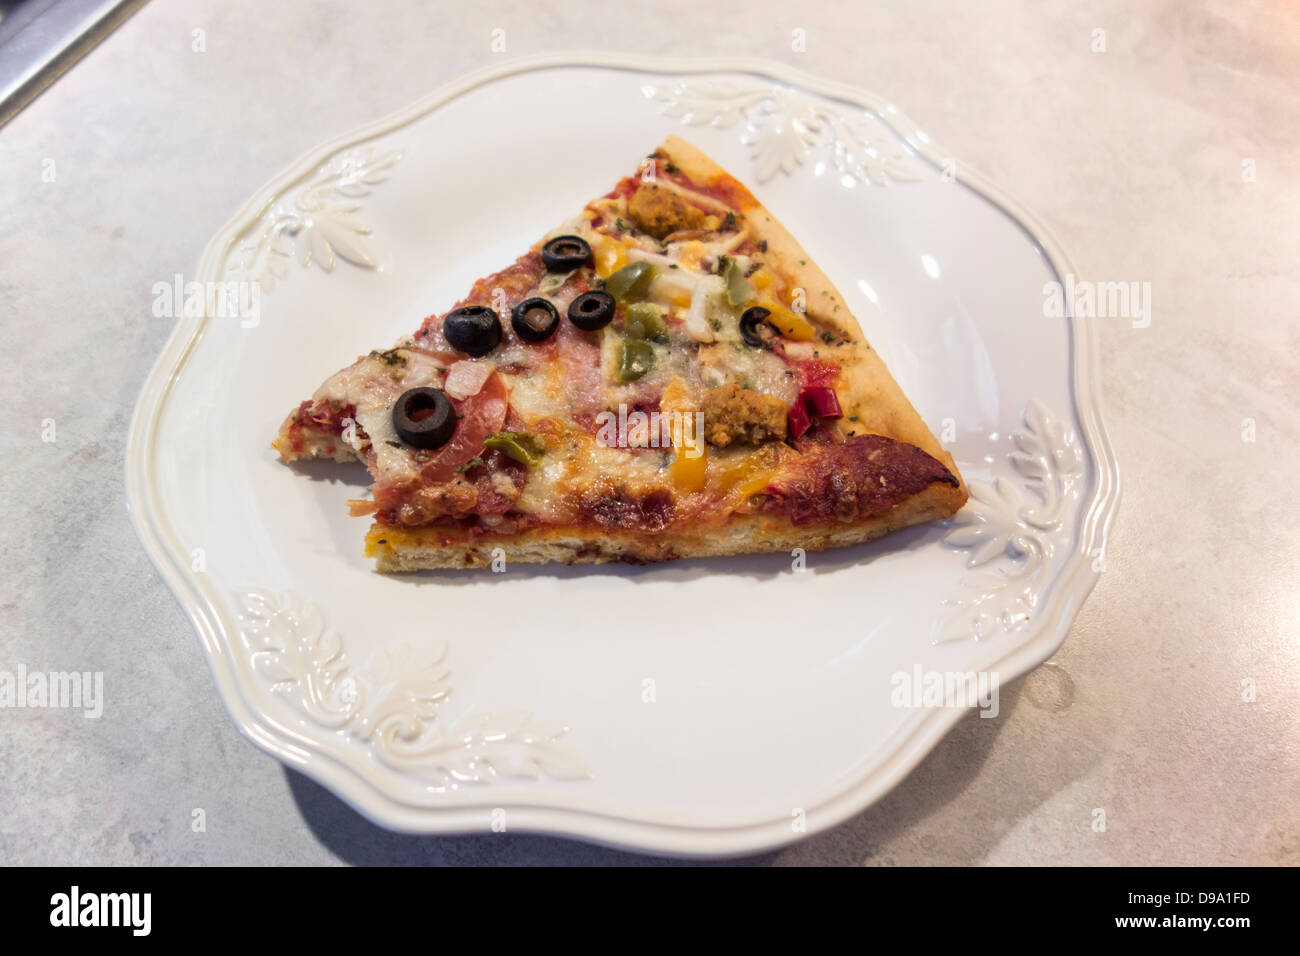 Un slize di suprema la pizza con un morso preso, su una piastra bianca. Close up. Stati Uniti d'America. Foto Stock